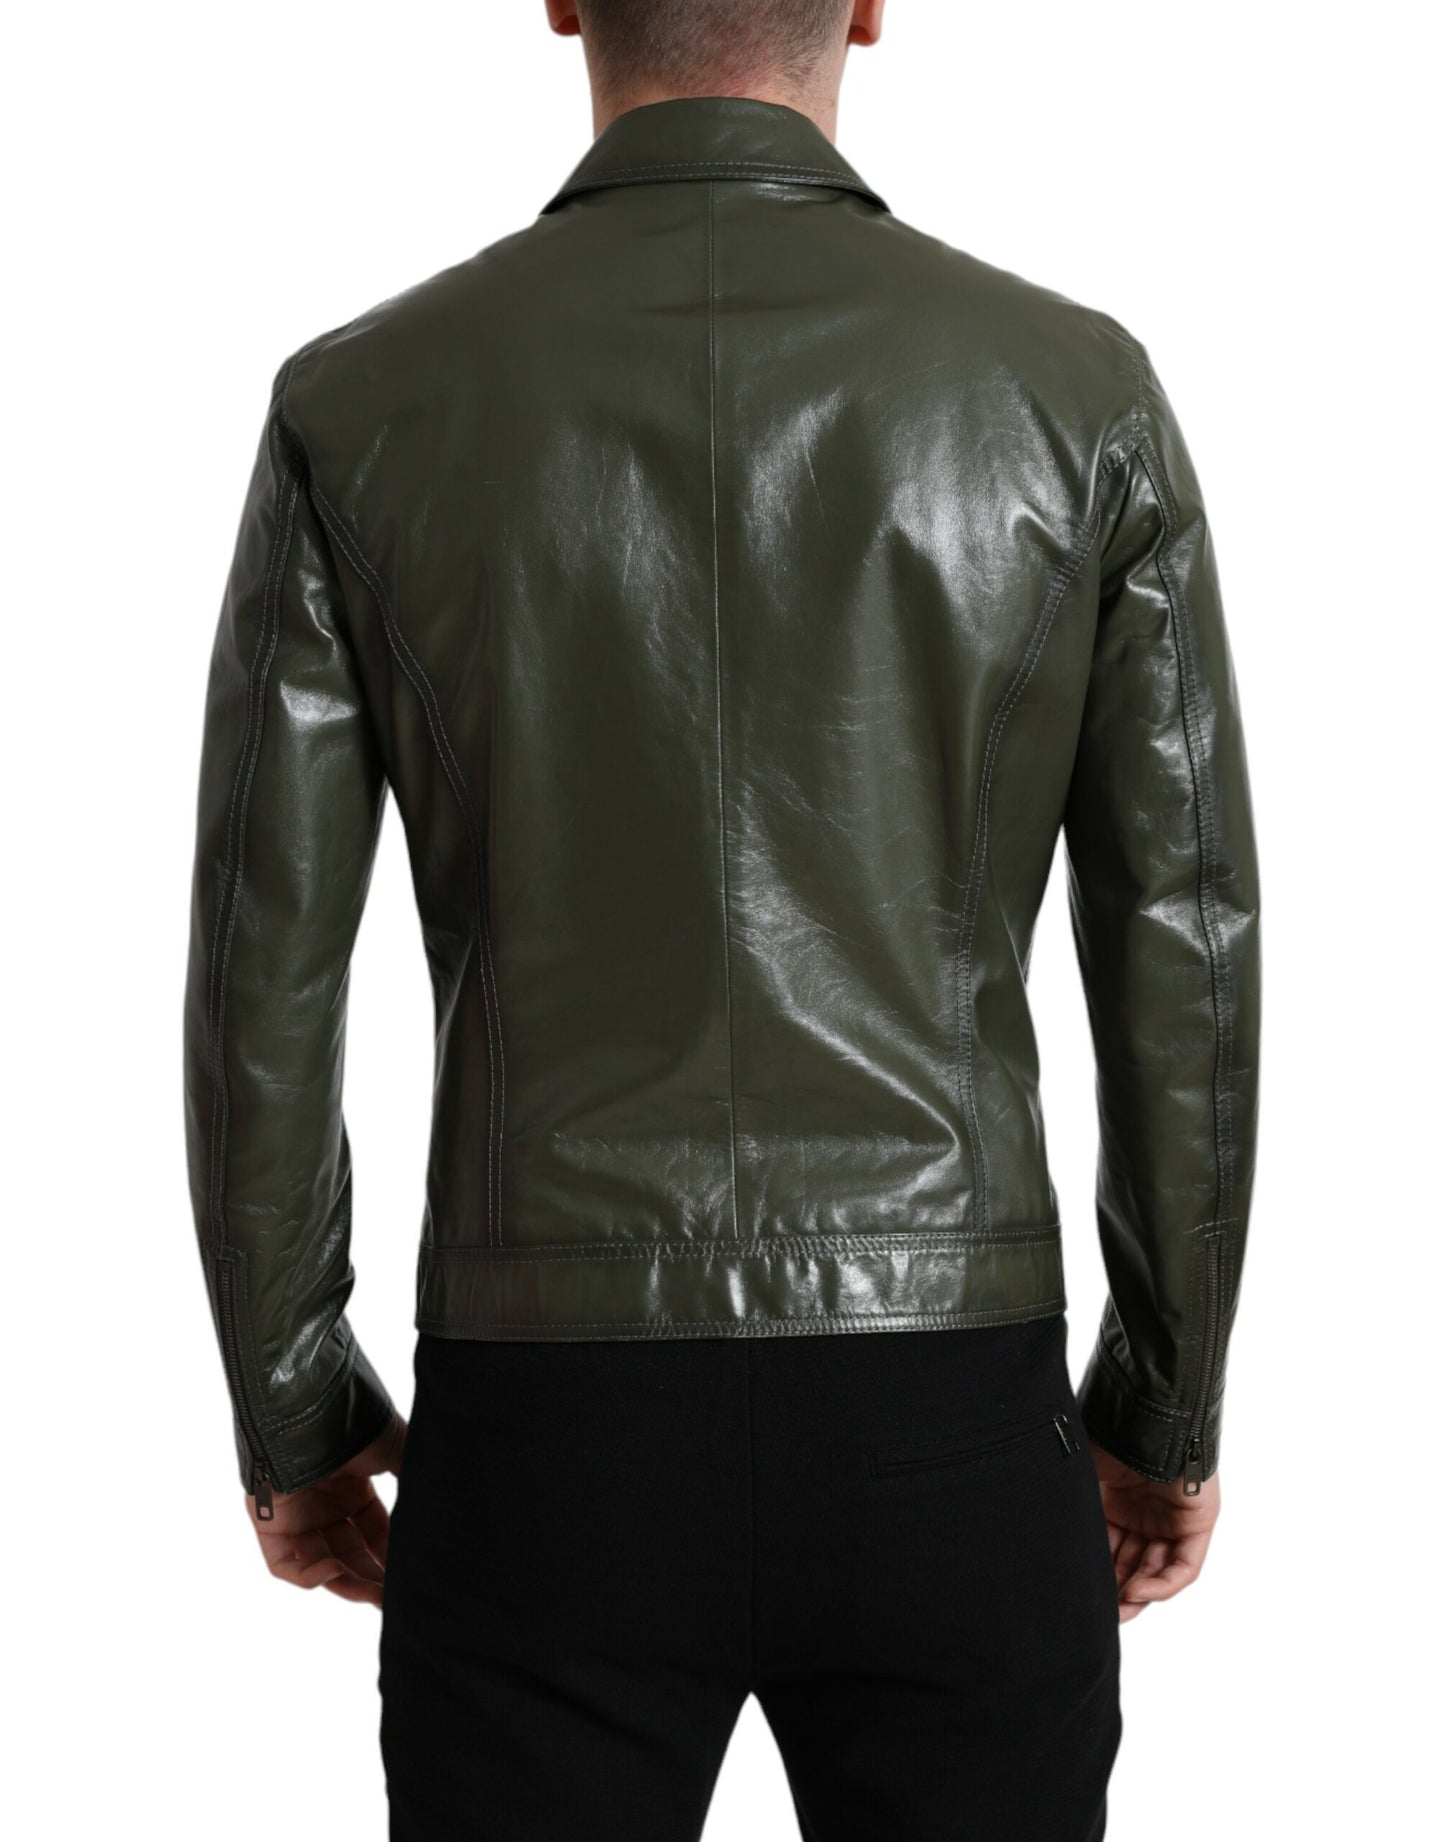 Emerald Elegance Leather Biker Jacket